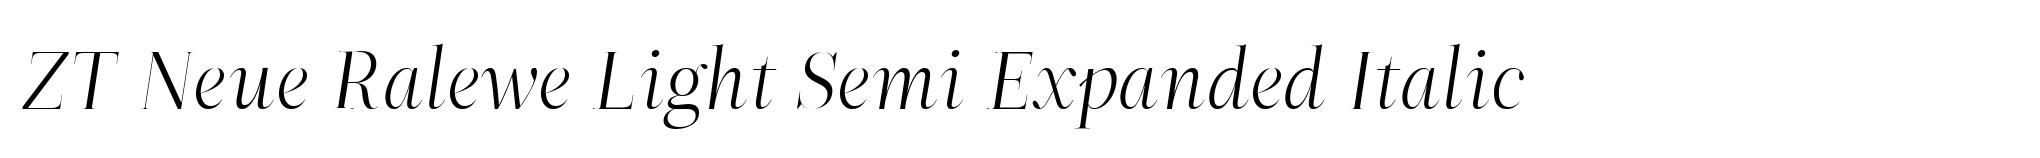 ZT Neue Ralewe Light Semi Expanded Italic image